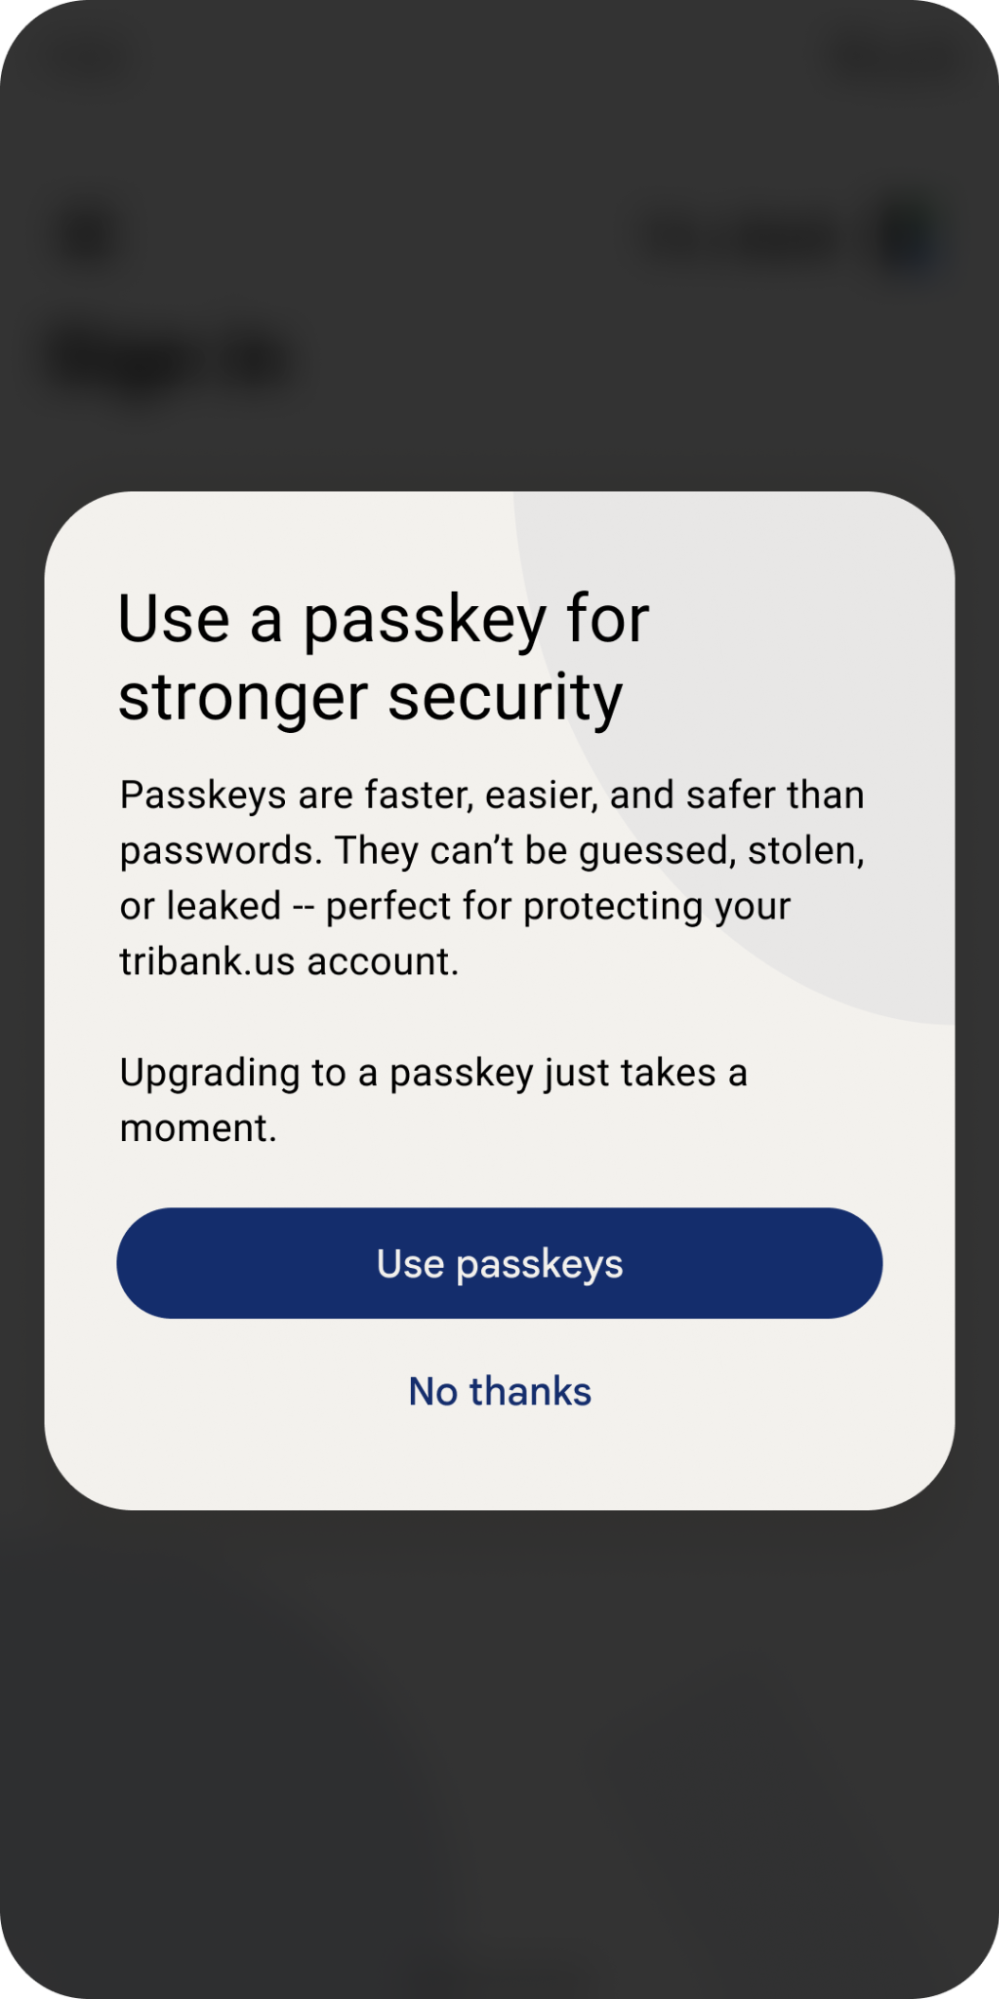 پاپ آپ به کاربر پیشنهاد می دهد از کلیدهای عبور برای رمزهای عبور سریع تر و ایمن تر استفاده کند.